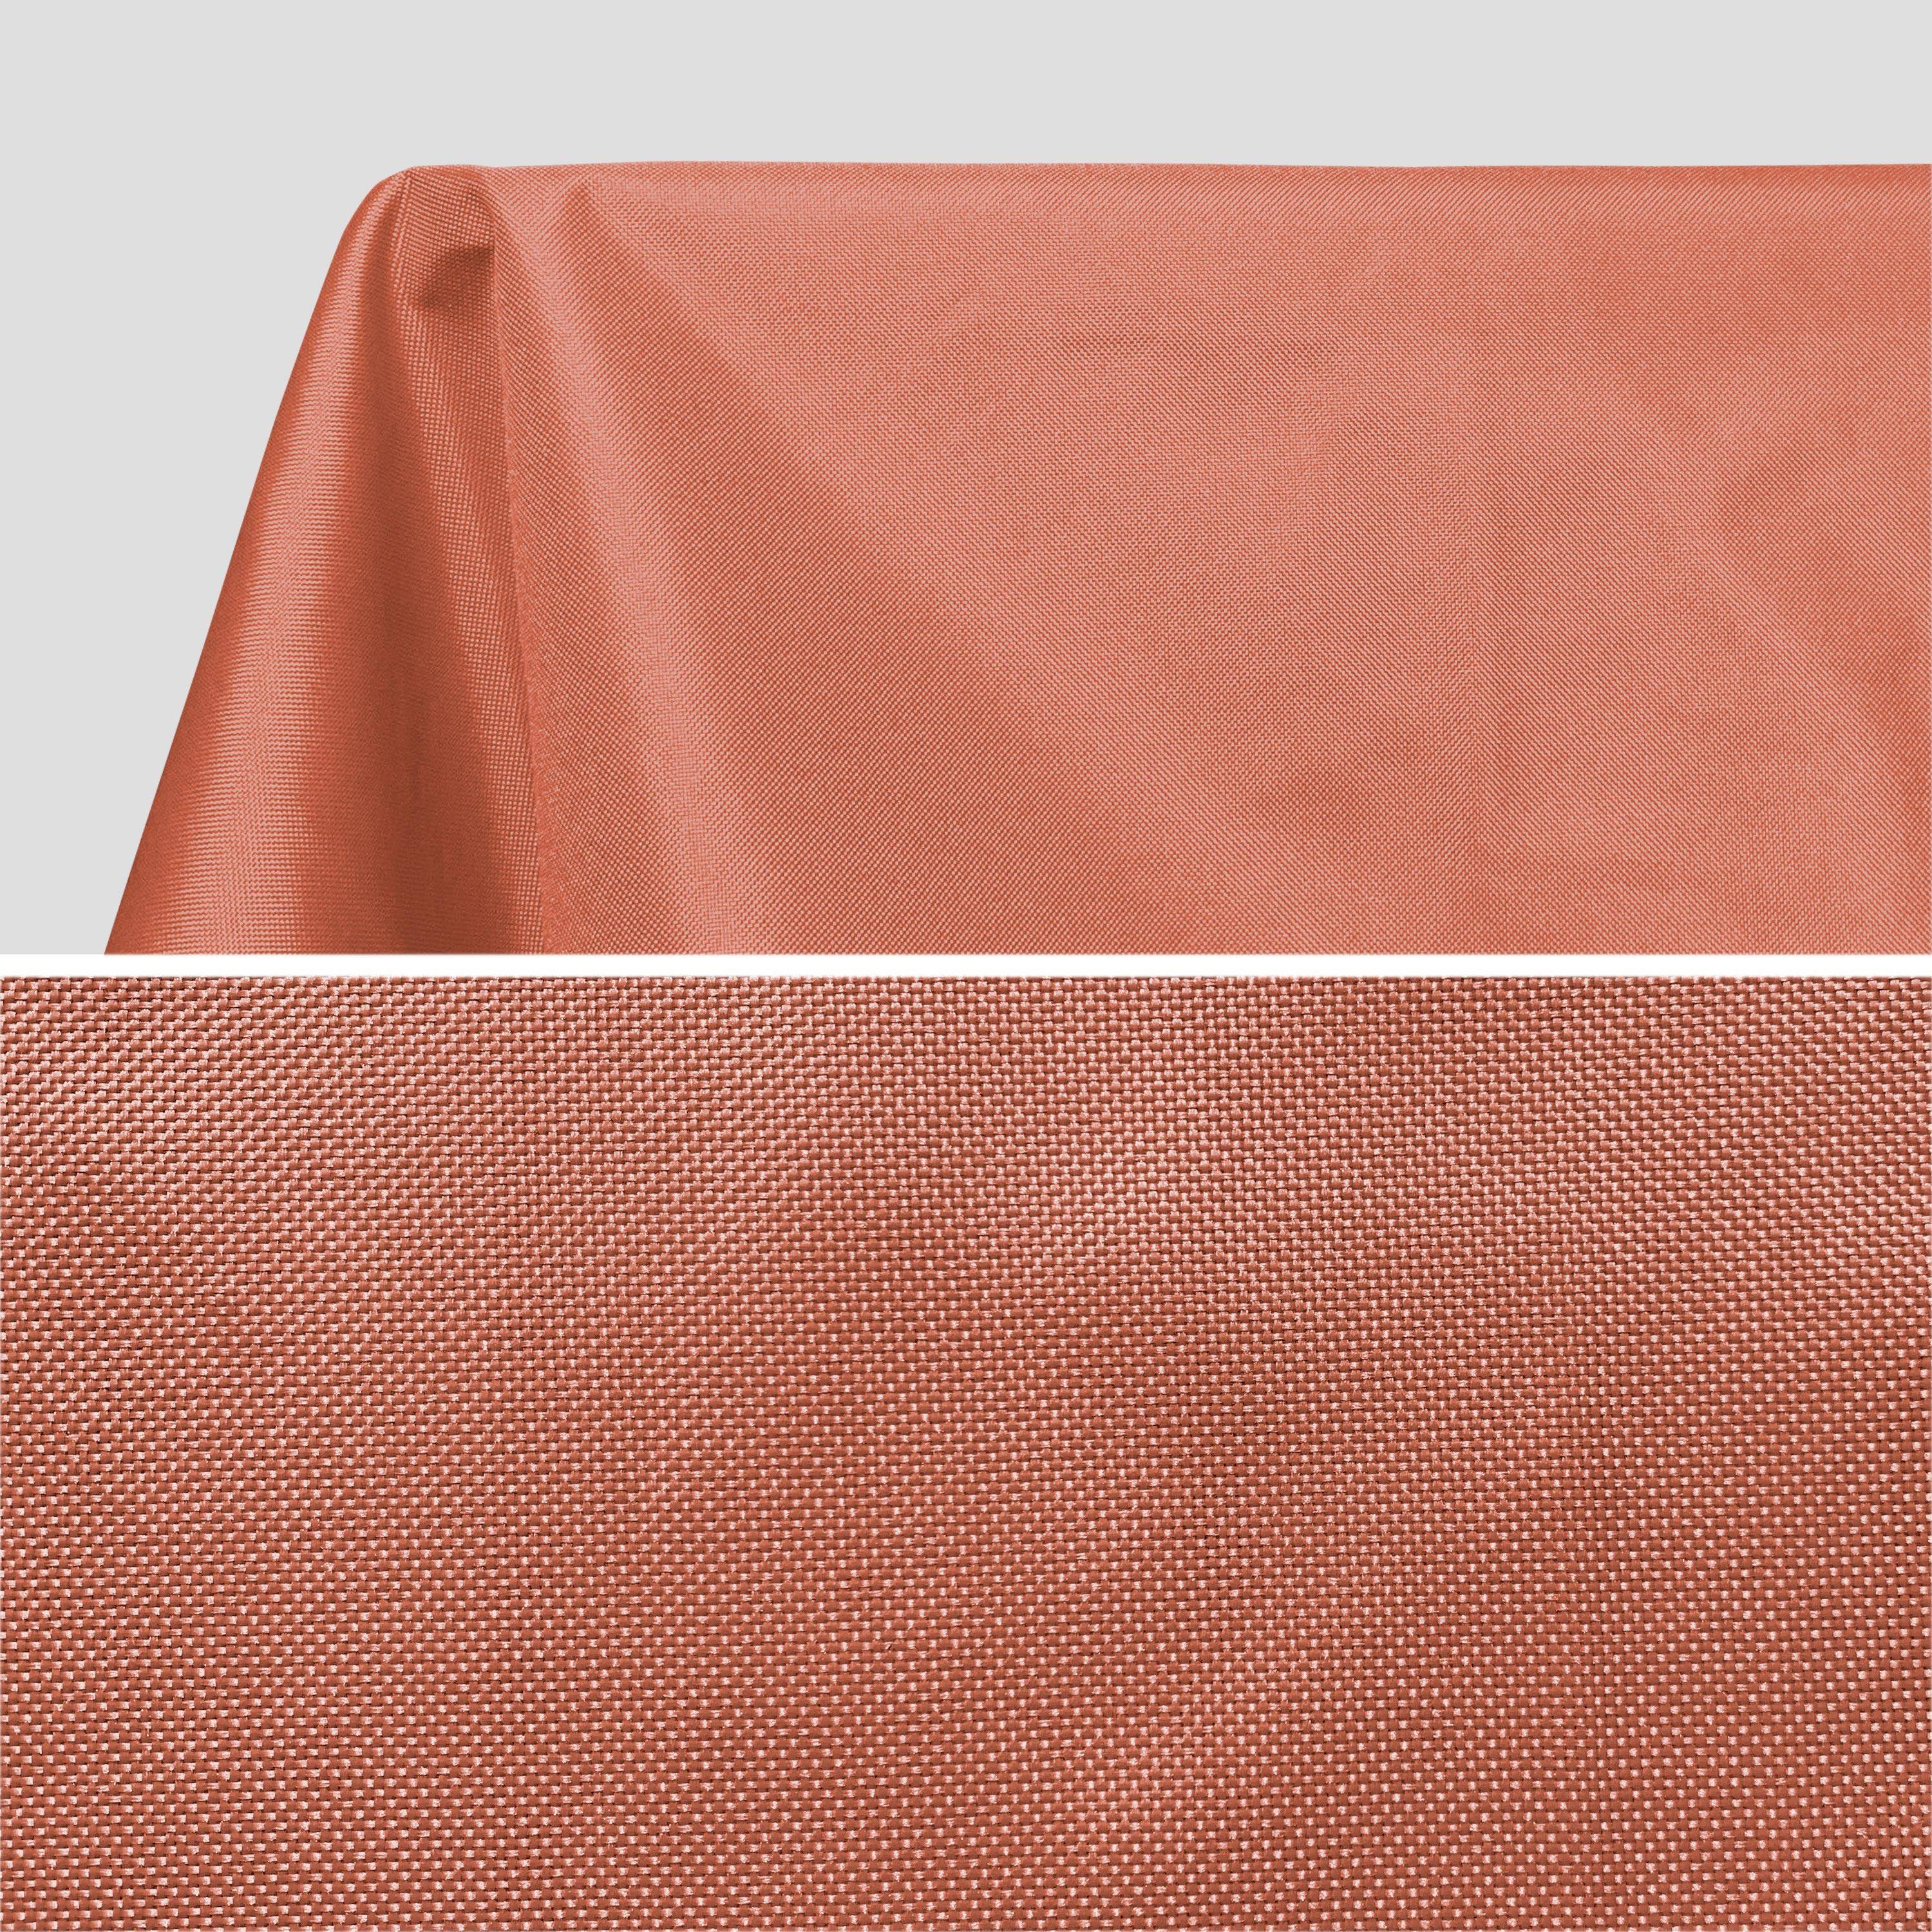 Outdoor-Tischdecke 140 X 240 cm Terrakotta, 100% Polyester, schützt den Tisch, UV-Schutz, sommerlicher Stil Photo2